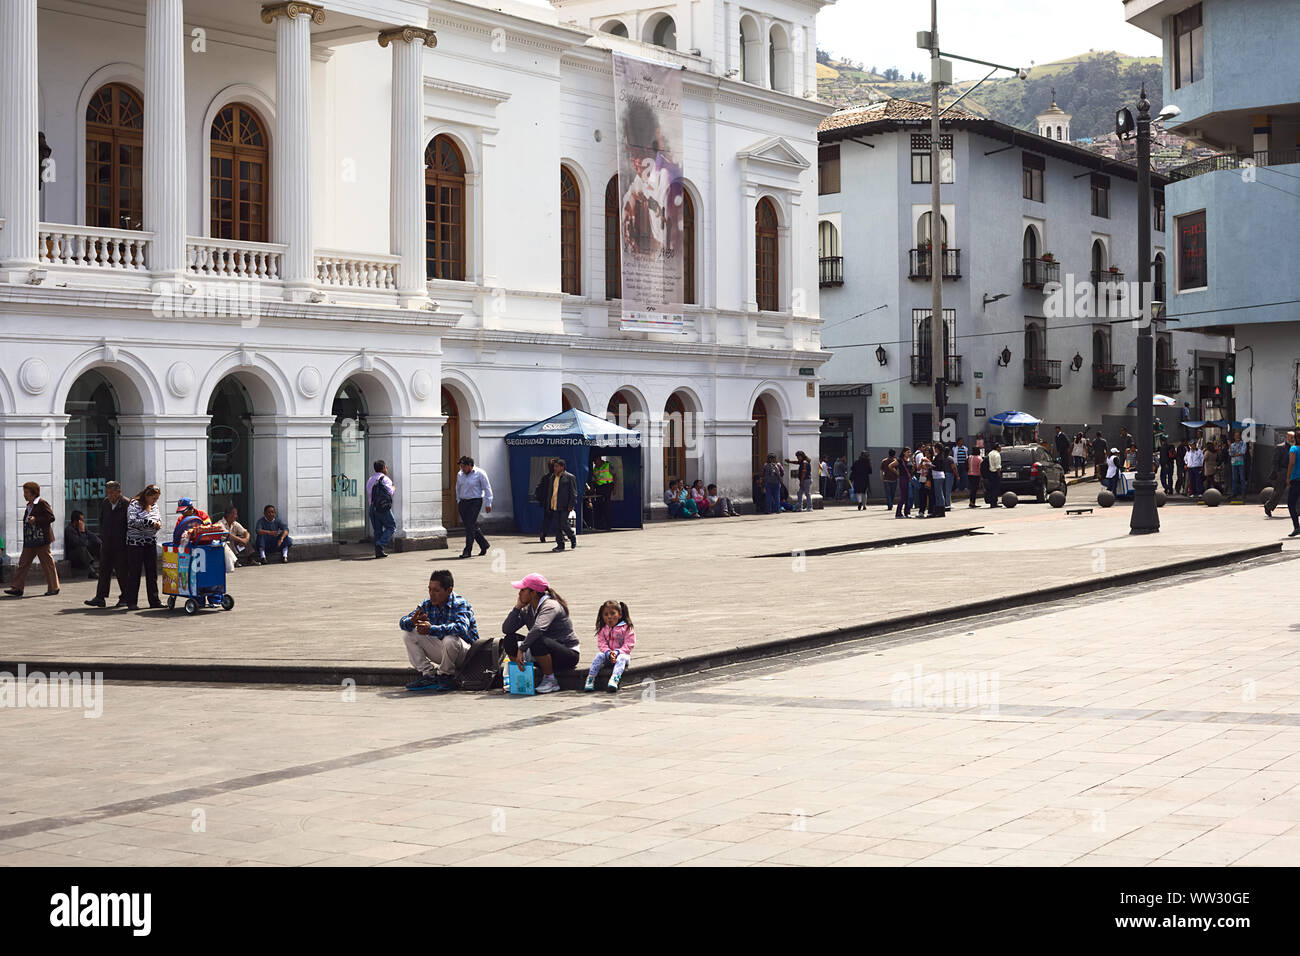 QUITO, ECUADOR - August 4, 2014: Nicht identifizierte Personen sitzen und laufen auf dem Plaza del Teatro (Theaterplatz) vor der Sucre Theater Stockfoto